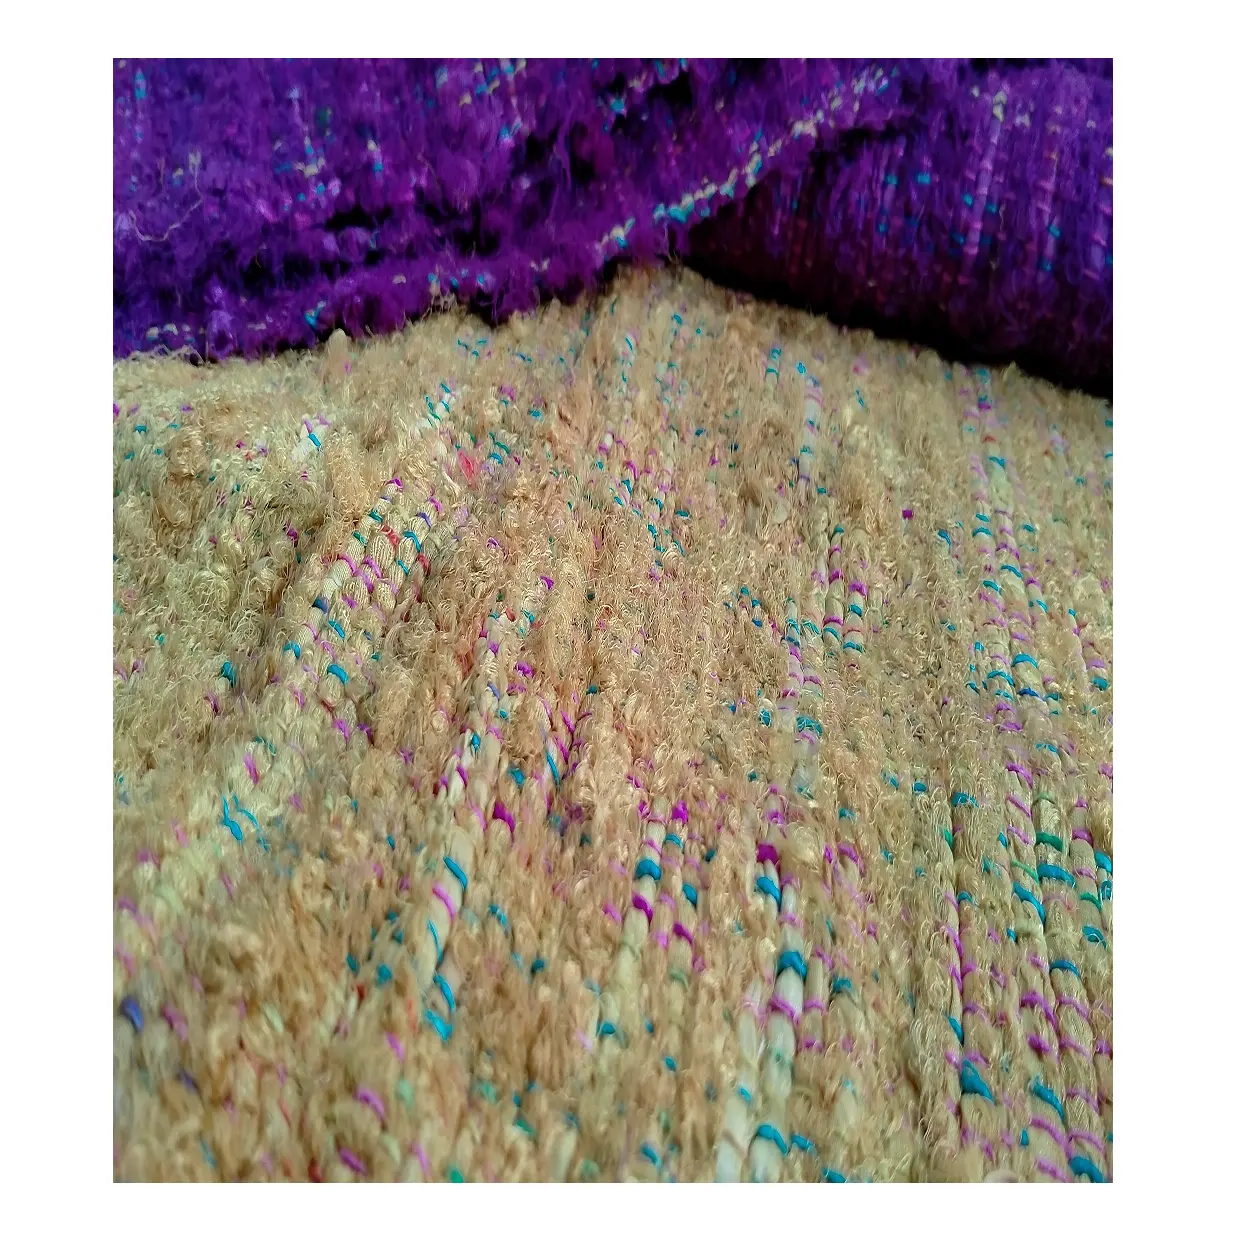 Mehrfarbiger Sari-Seidenstoff in Rollen in verschiedenen Farben erhältlich, geeignet für Wohnkultur und Innen architekten